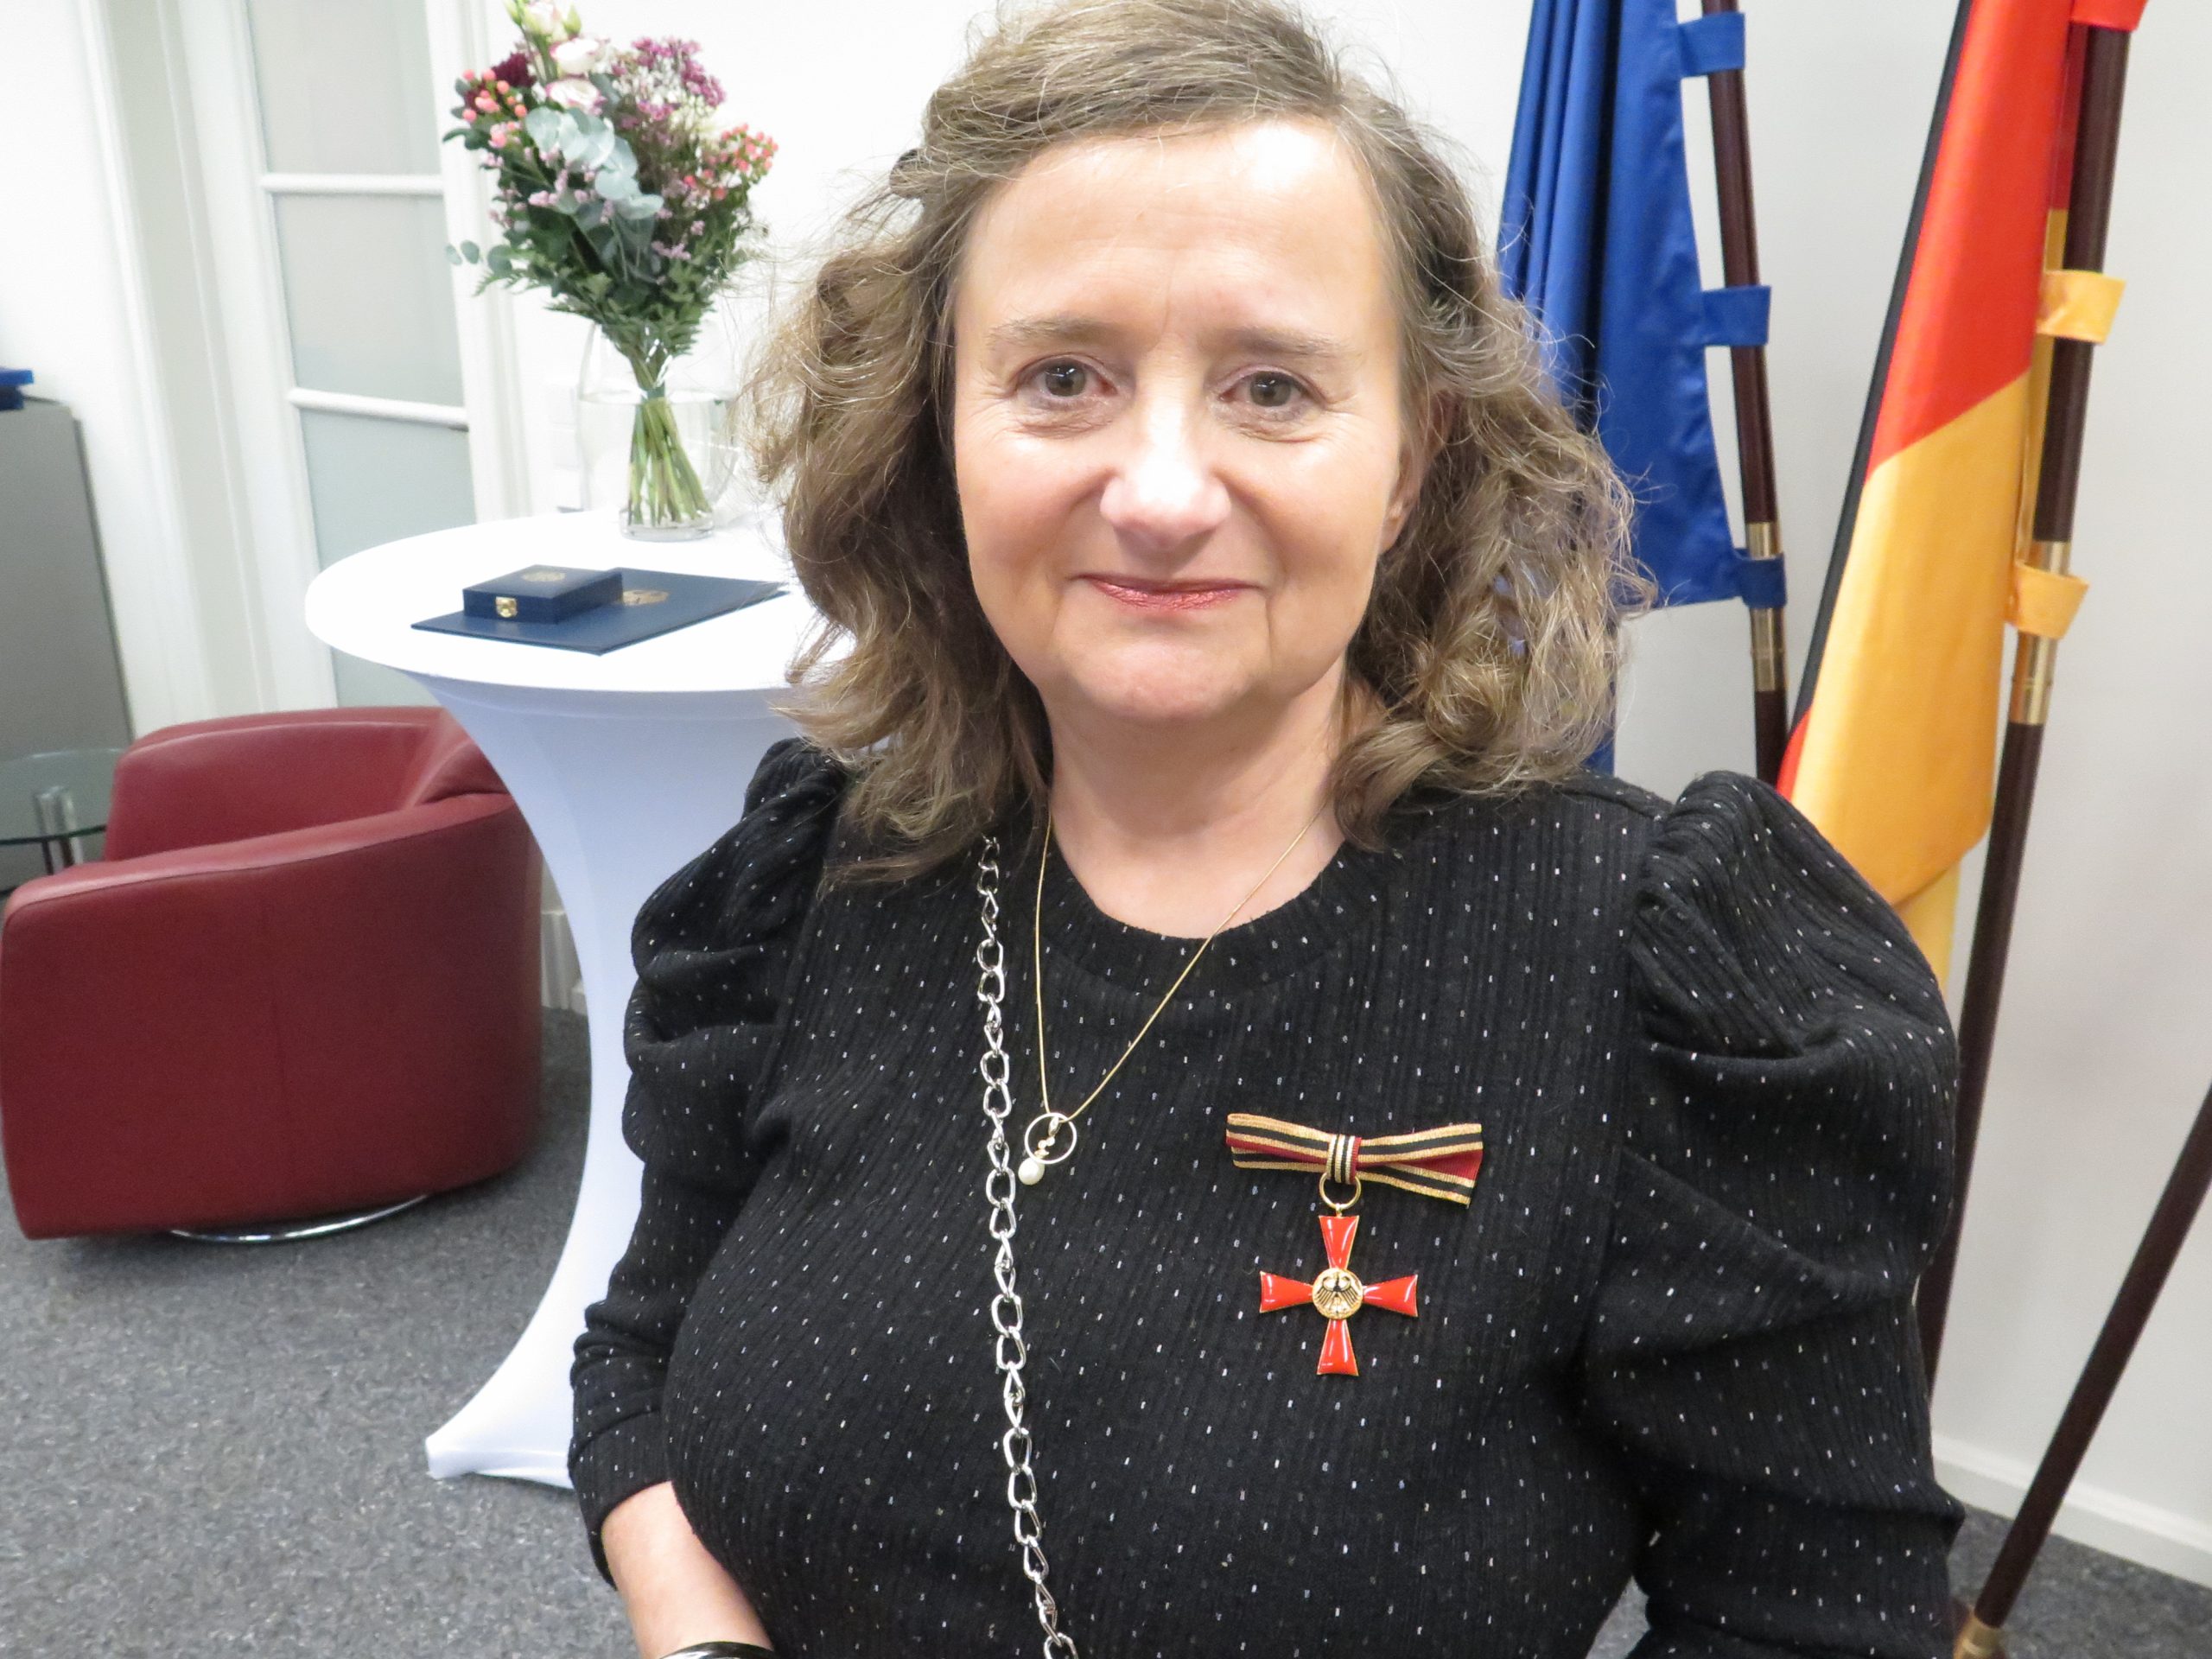 Sabine von Wegerer, erste Vorsitzende des Vereins Berliner Leberring e.V., hat das Bundesverdienstkreuz erhalten. Foto: Berliner Leberring e.V.